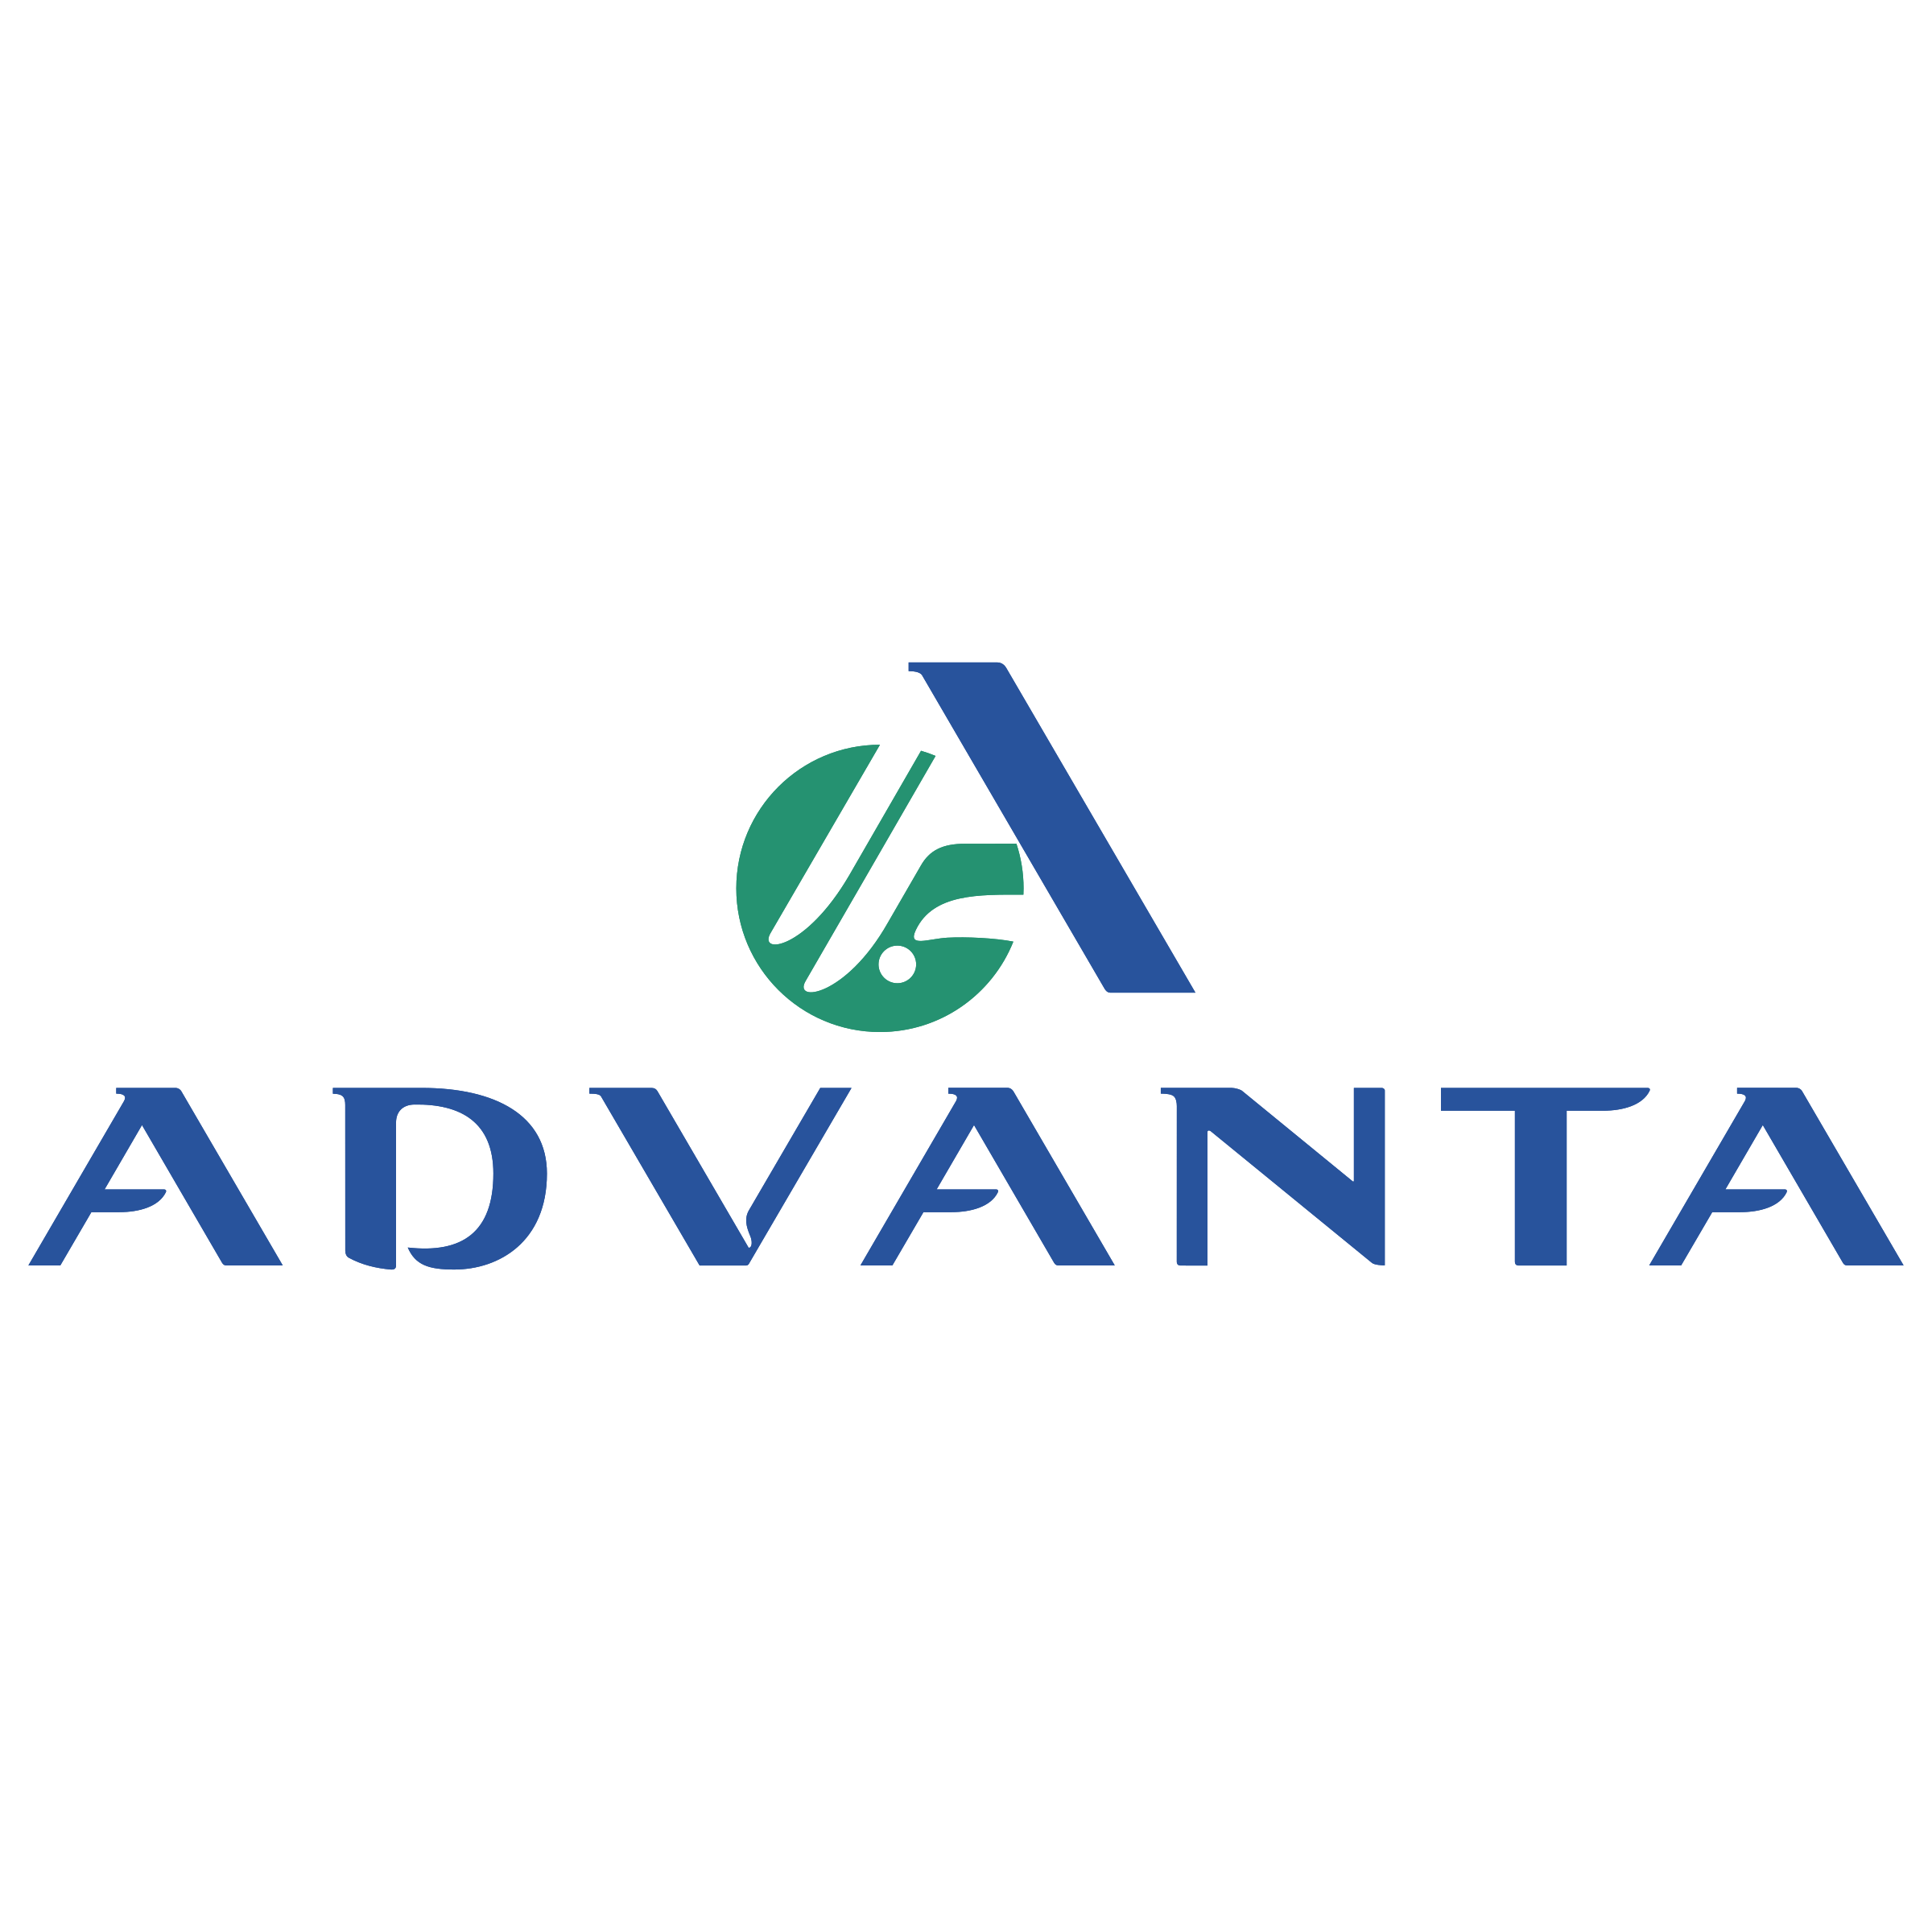 advanta-logo-png-transparent